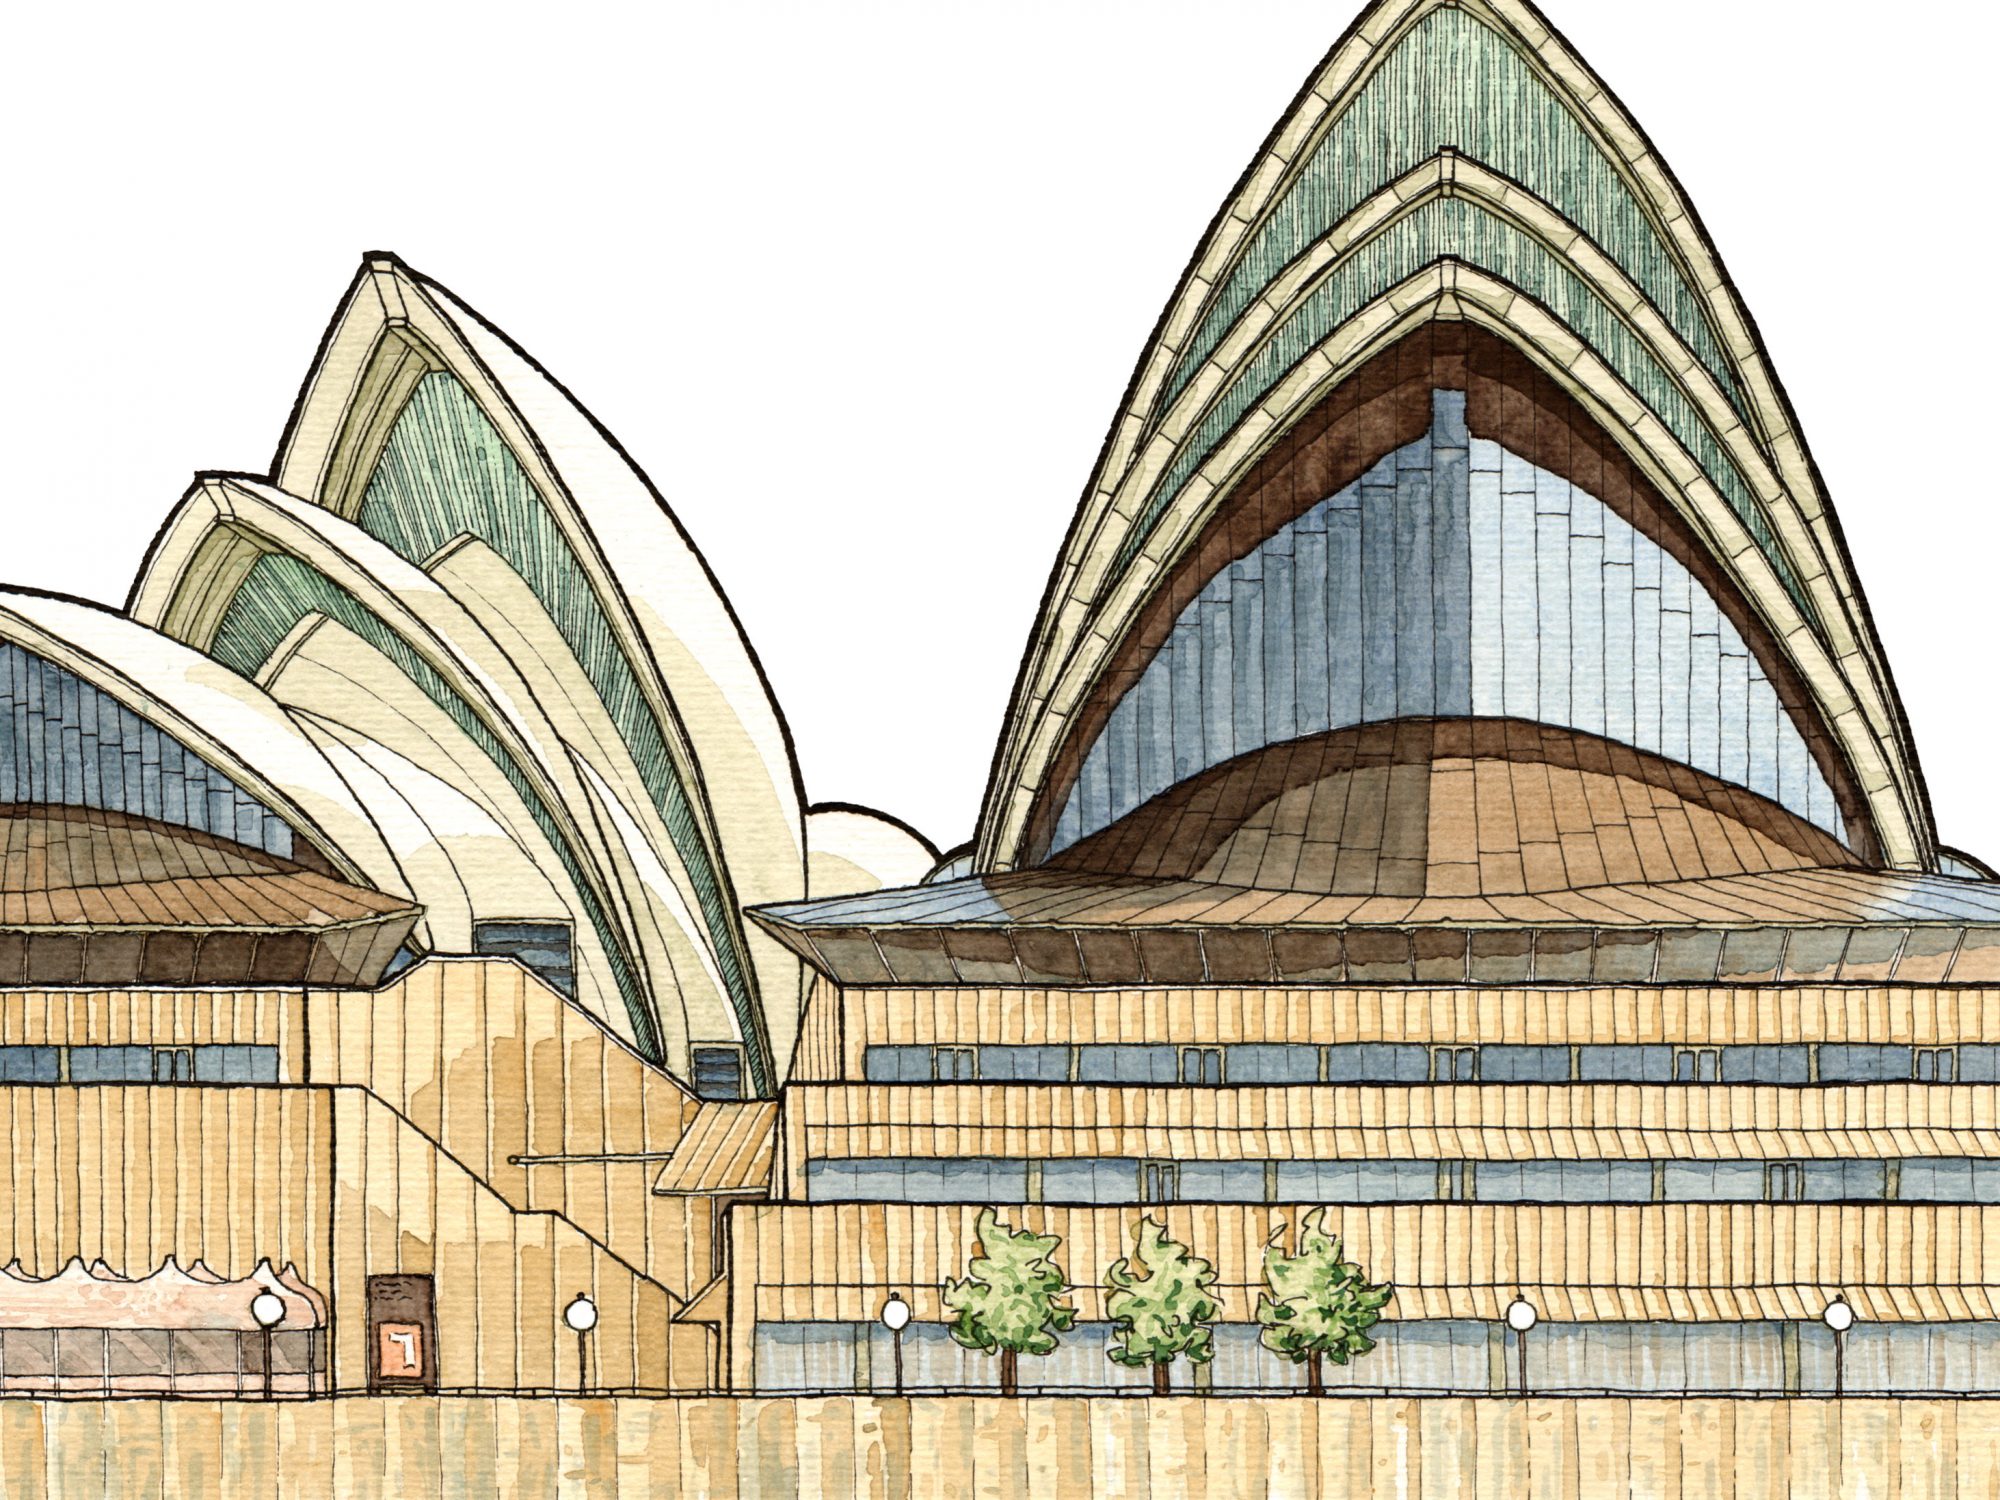 Sachillustration des Sydney Opera House zum Aufklappen; Illustration von Jan Moritz Baltruweit